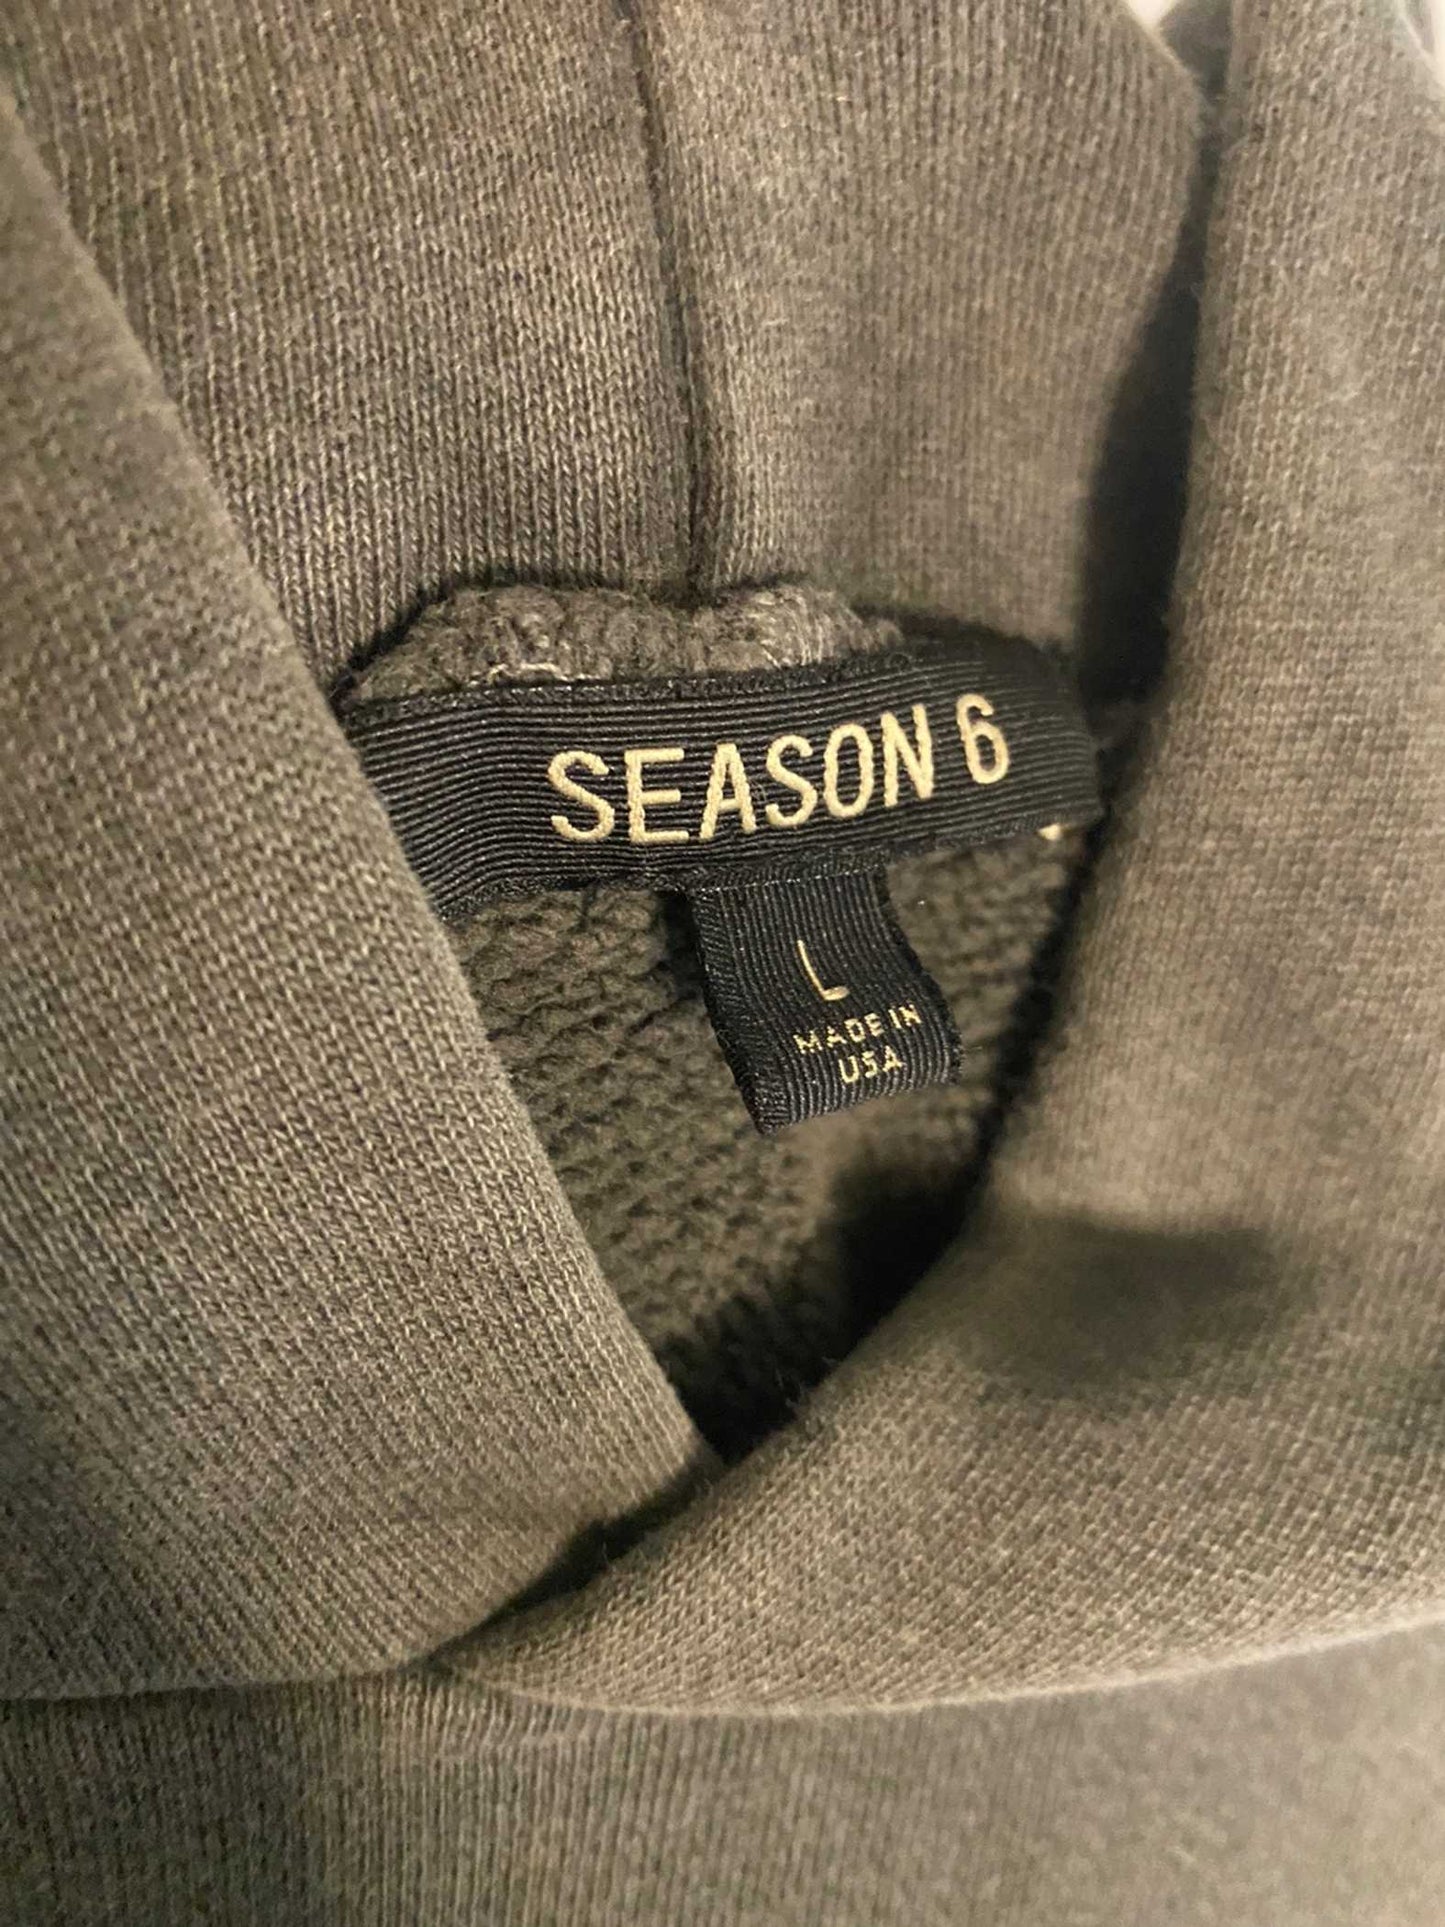 Season 6 hoodie